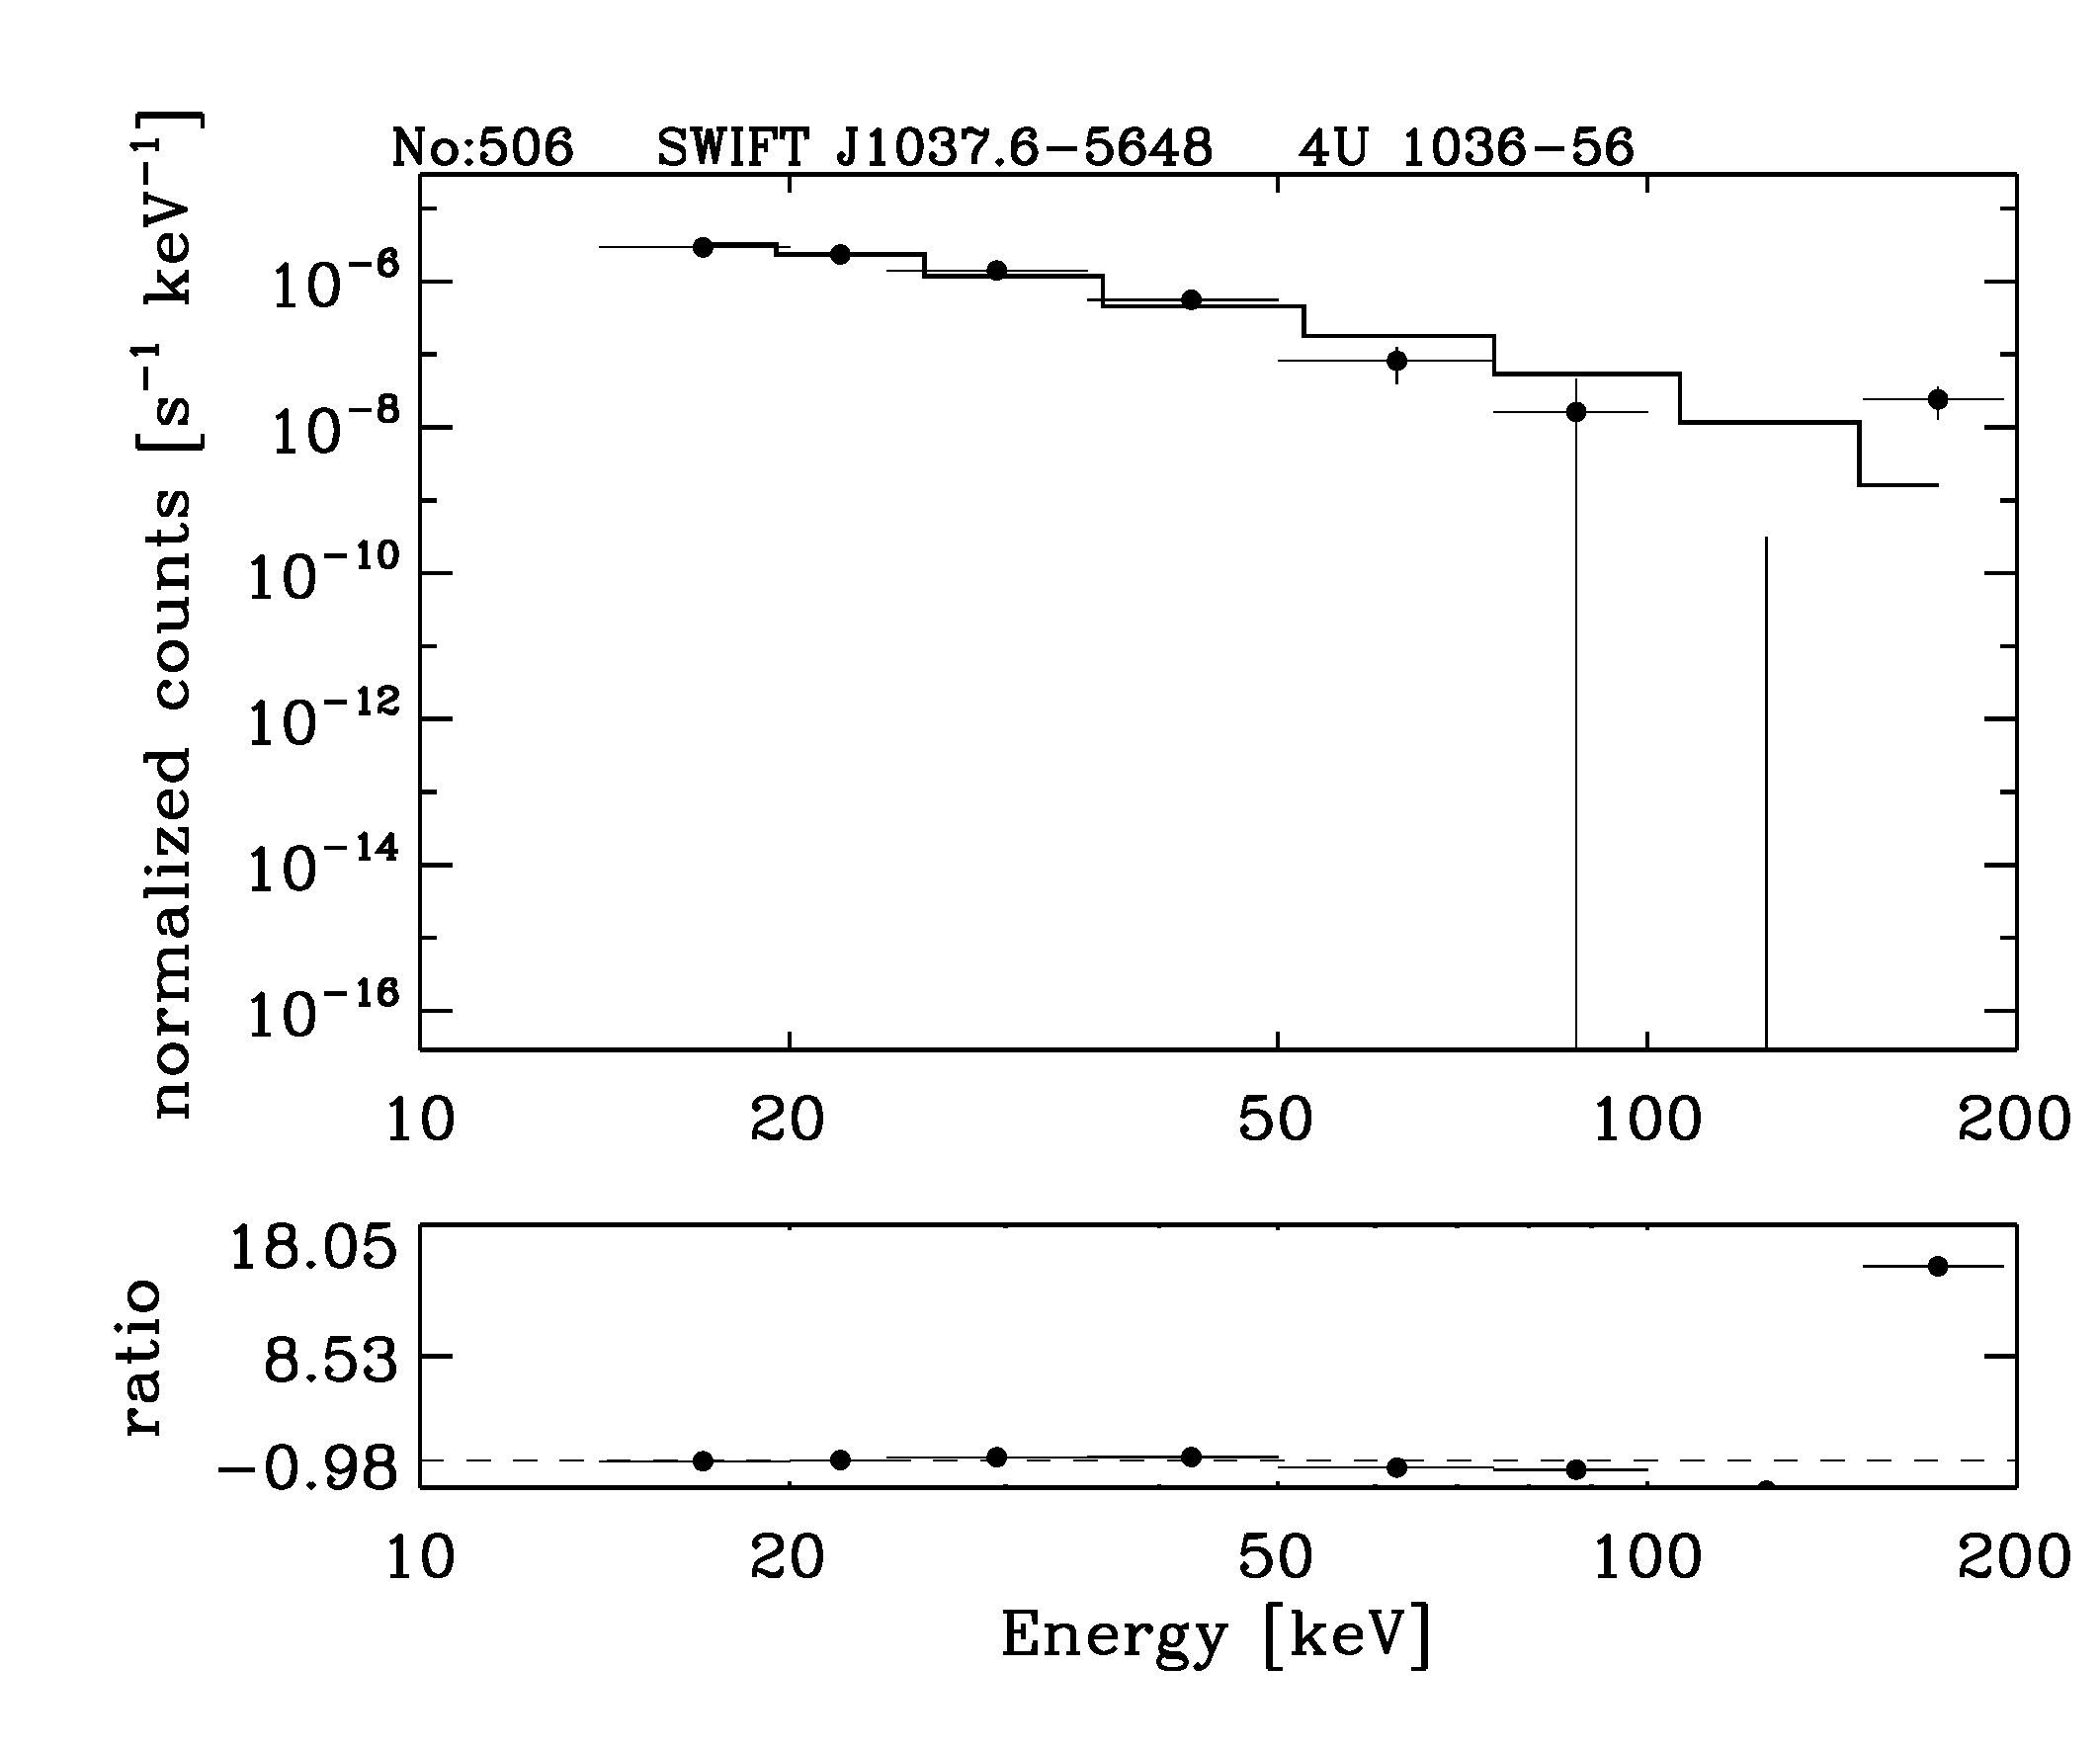 BAT Spectrum for SWIFT J1037.6-5648